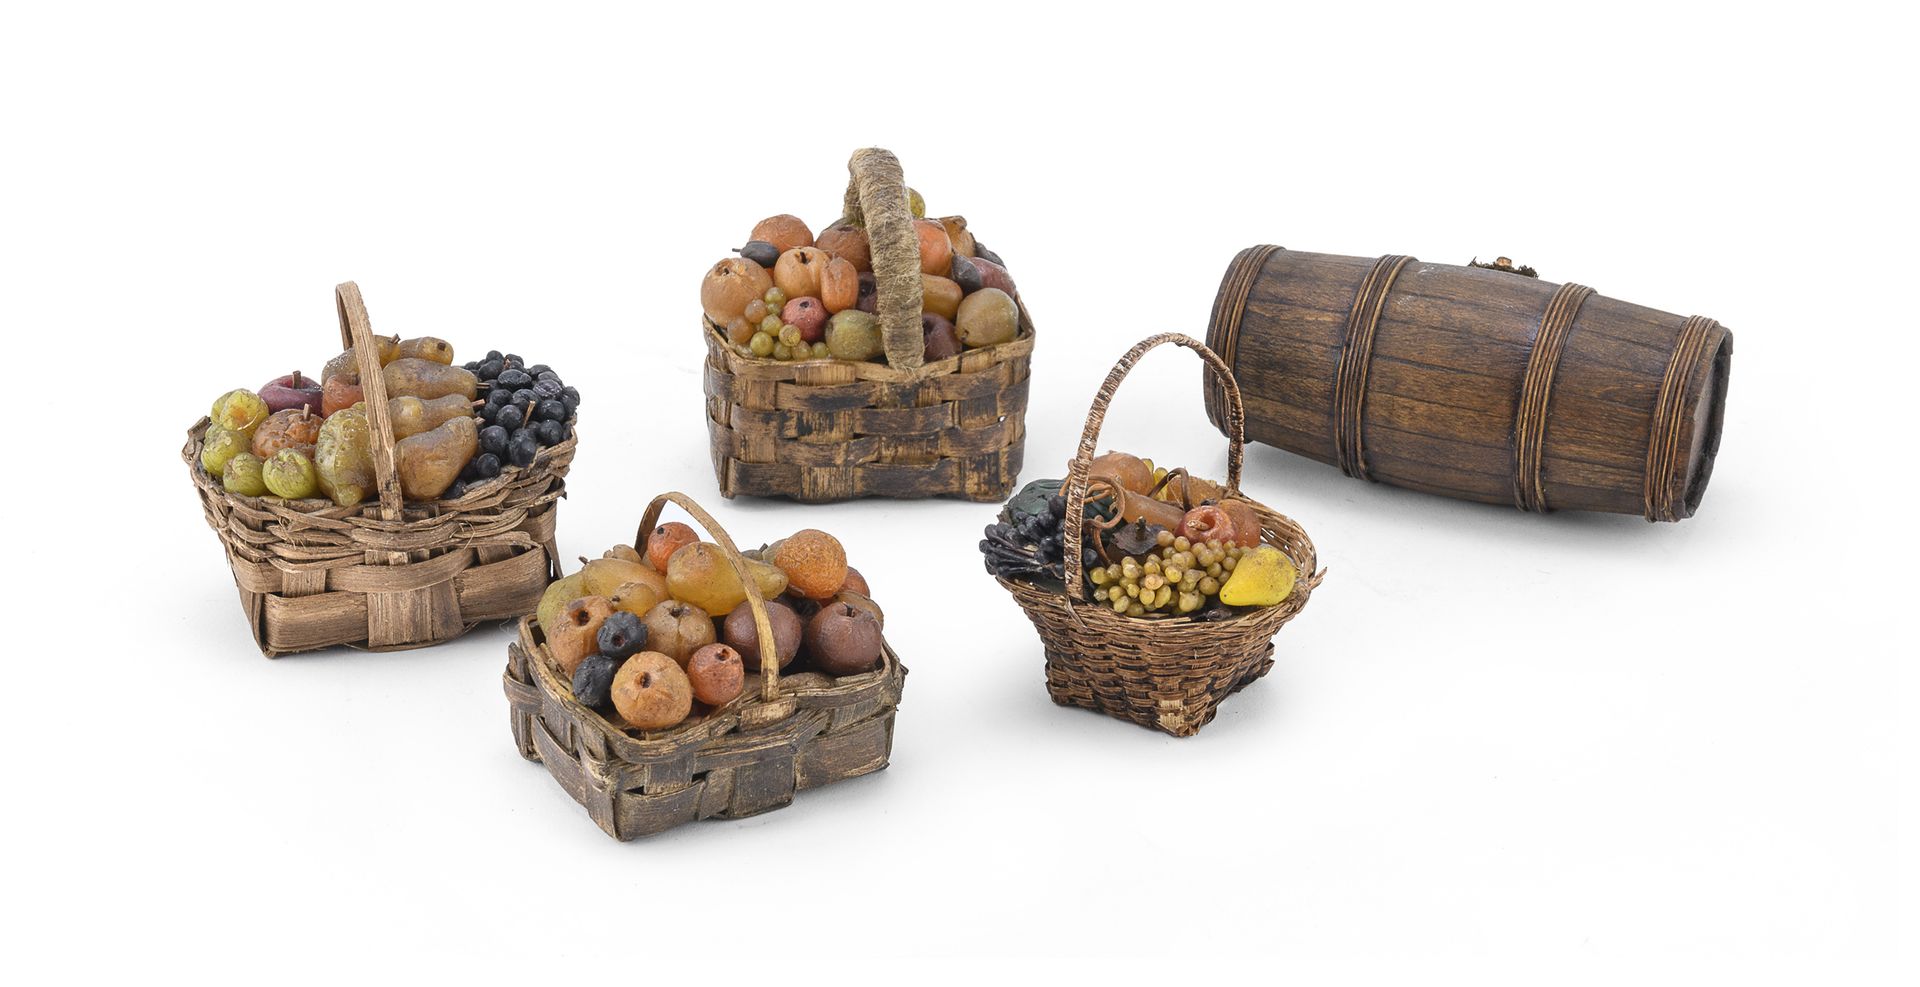 Null 五个耶稣诞生的配件，那不勒斯 19世纪
稻草、木材和彩色蜡。拍品包括四个水果篮和桶。 
桶的尺寸为6 x 12厘米。